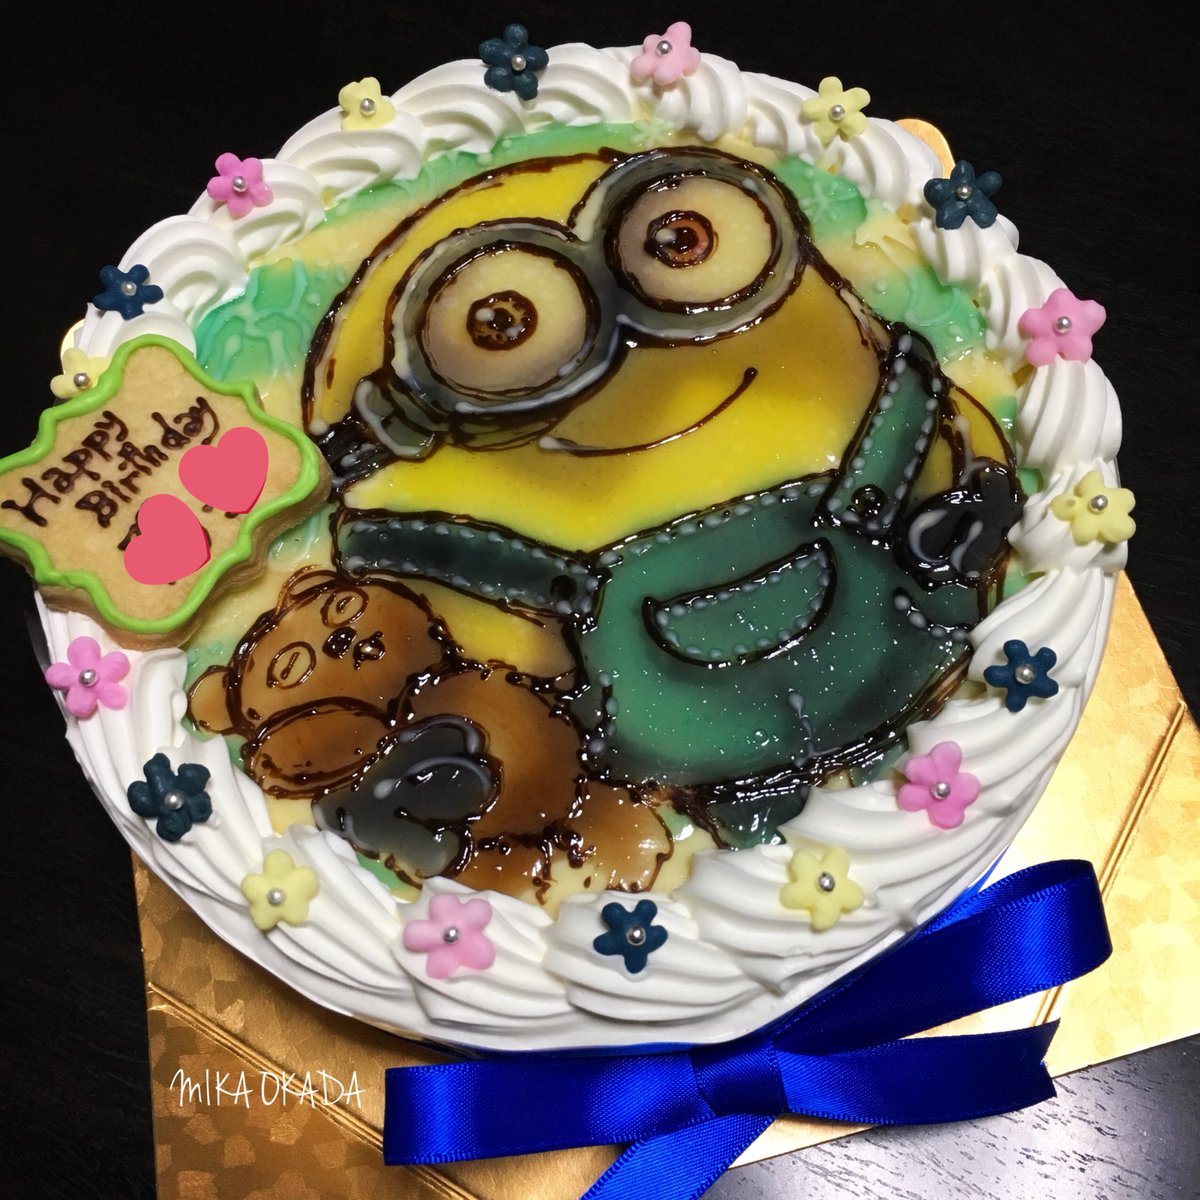 オカダ ミカ 手描きイラストケーキ No Twitter ミニオンのイラストケーキ ボブは一番人気ですね ミニオン ボブ Minions イラストケーキ ケーキ Cake Partycake 誕生日 ハッピーバースデー おめでとう Happybirthday